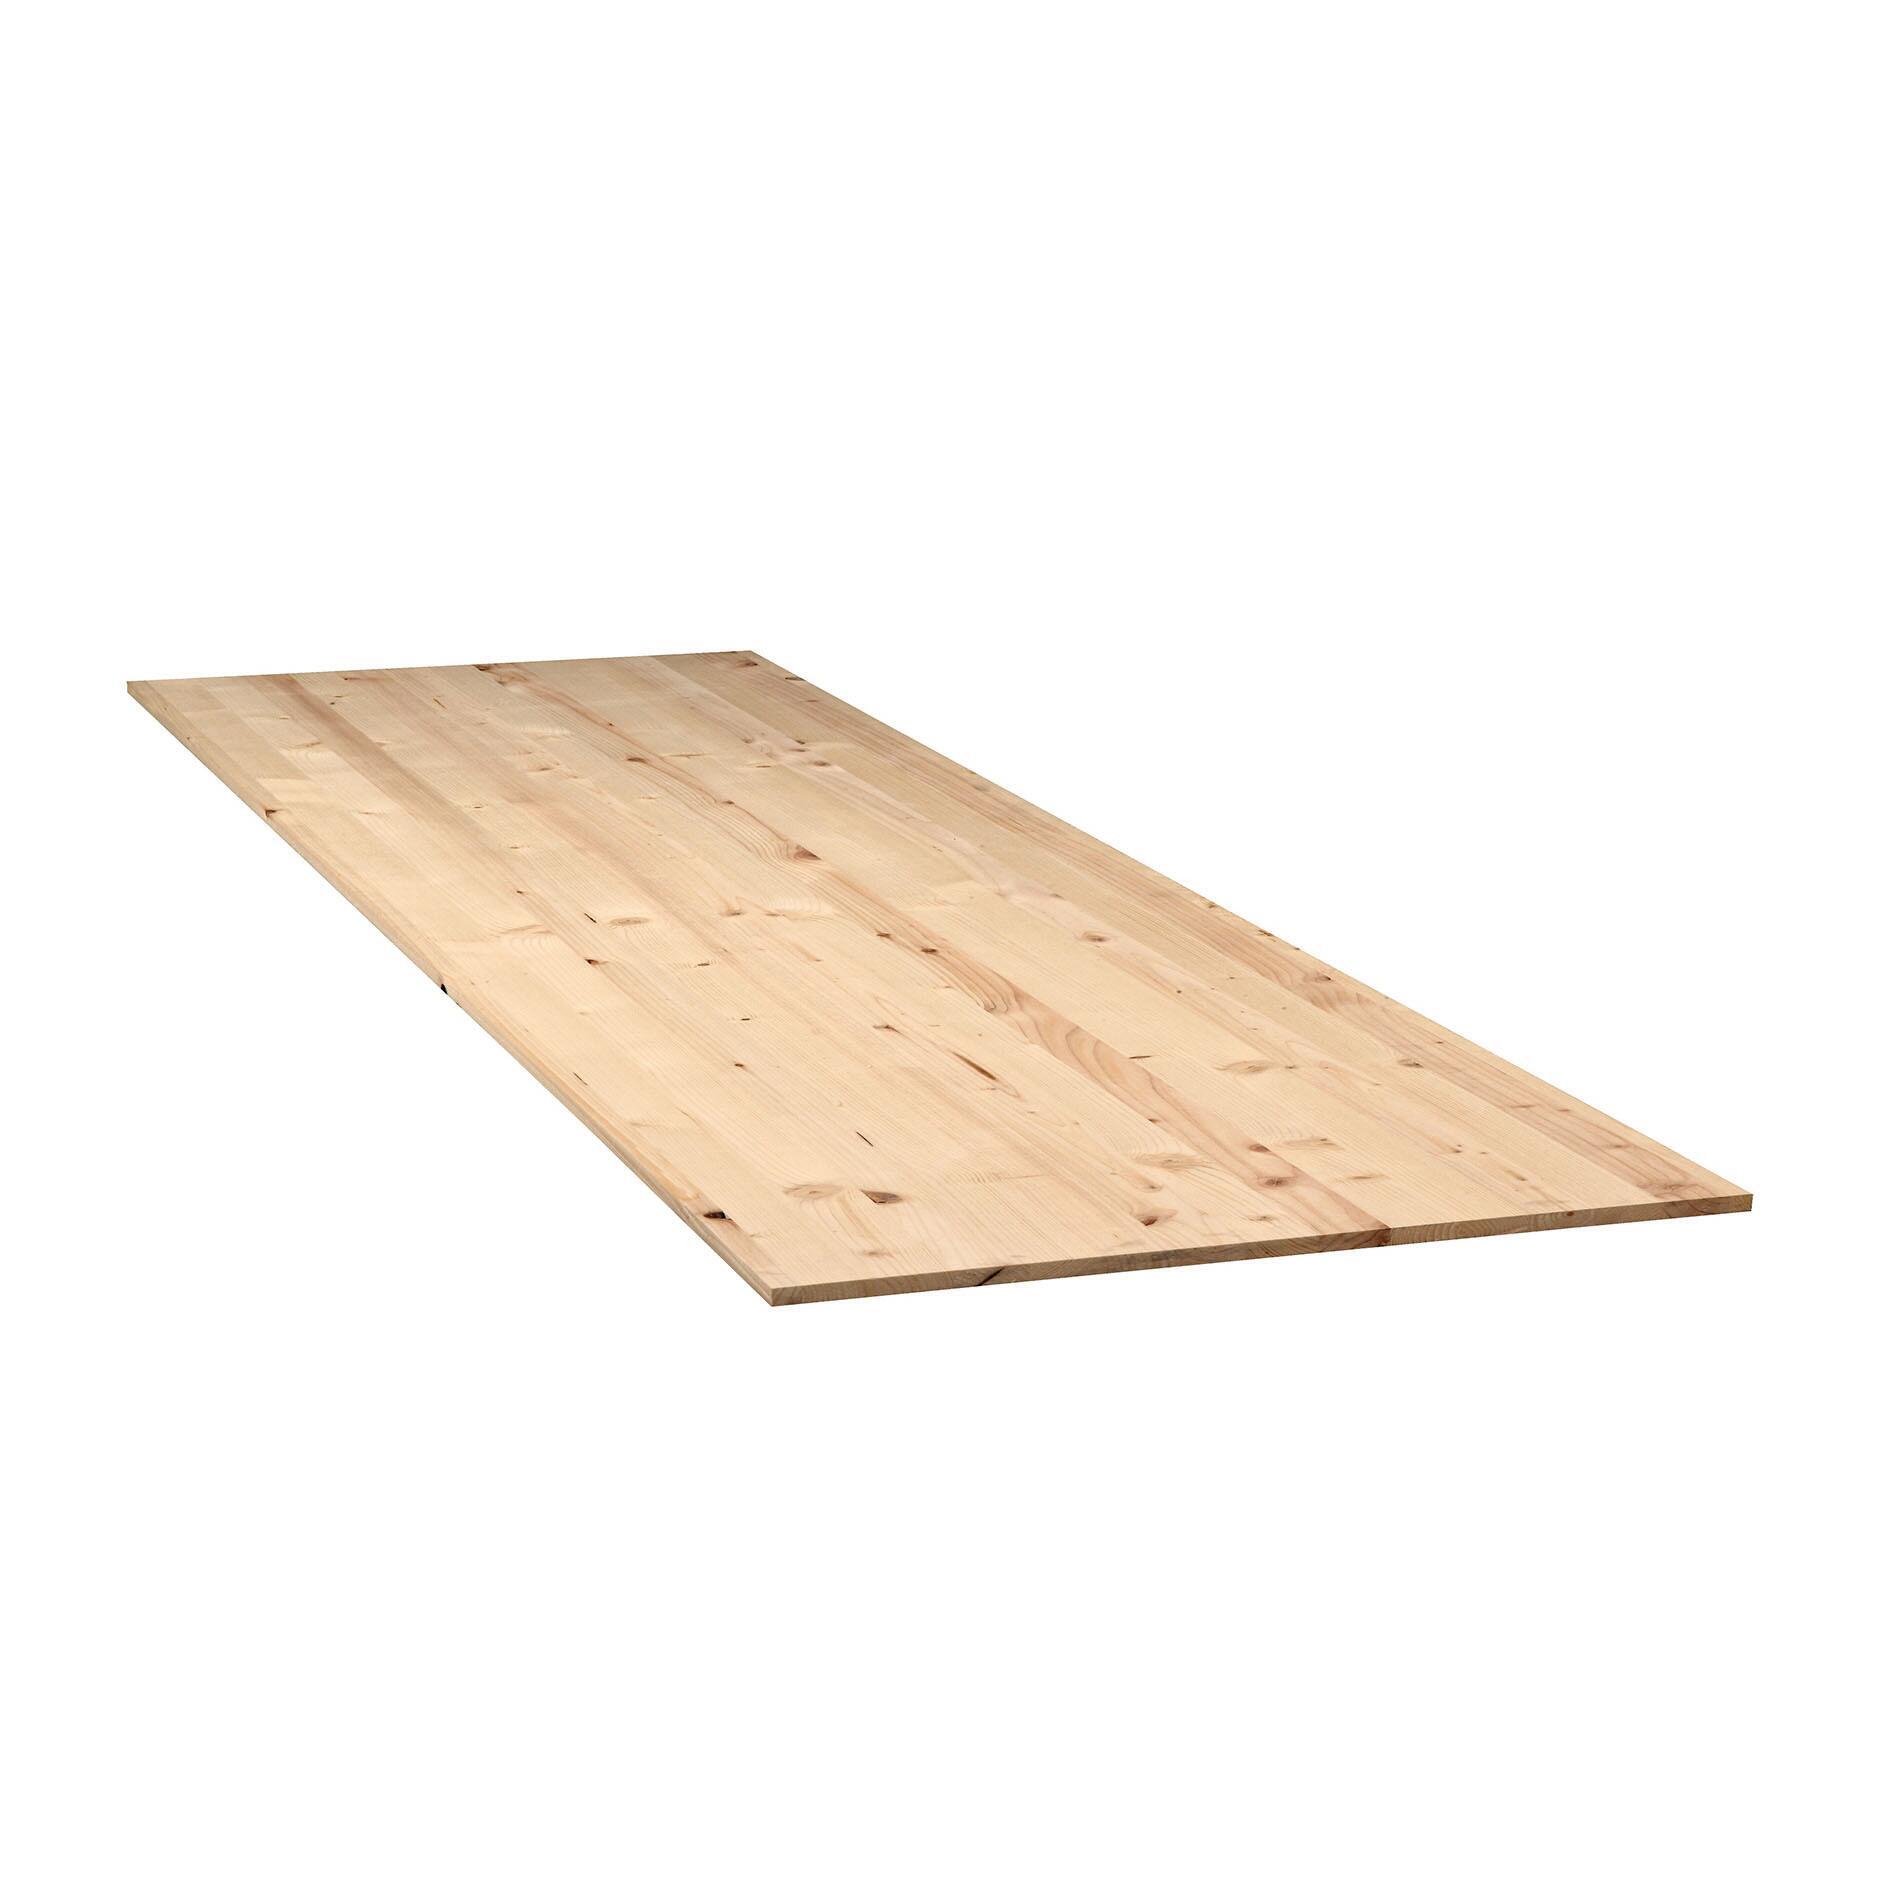 Offerta sconto - 40 Tavolo in legno grezzo rovere 200 x 90 cm